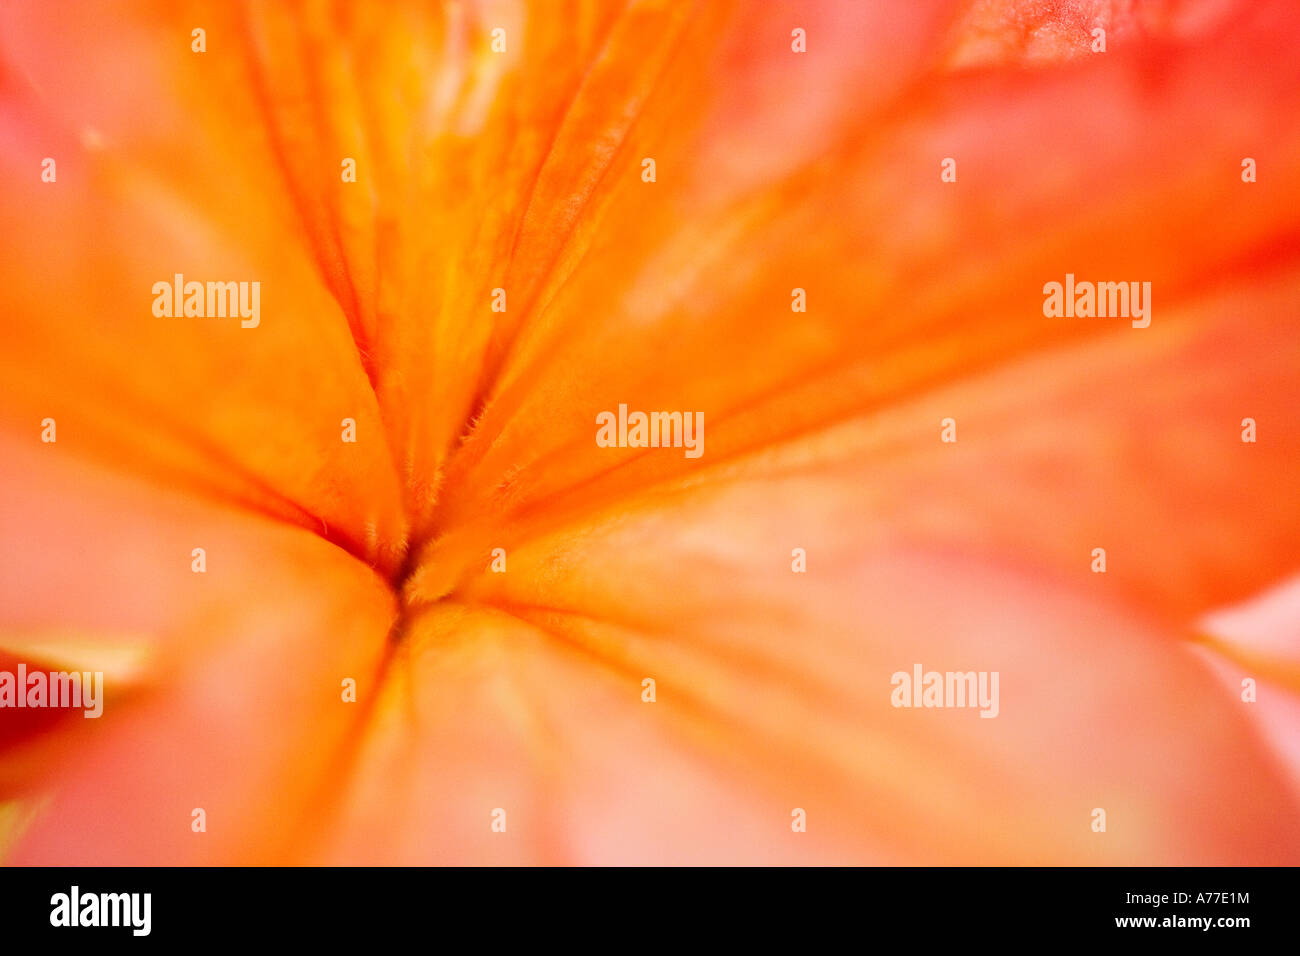 Abstract close-up immagine del centro di un arancione fiore di rododendro Foto Stock